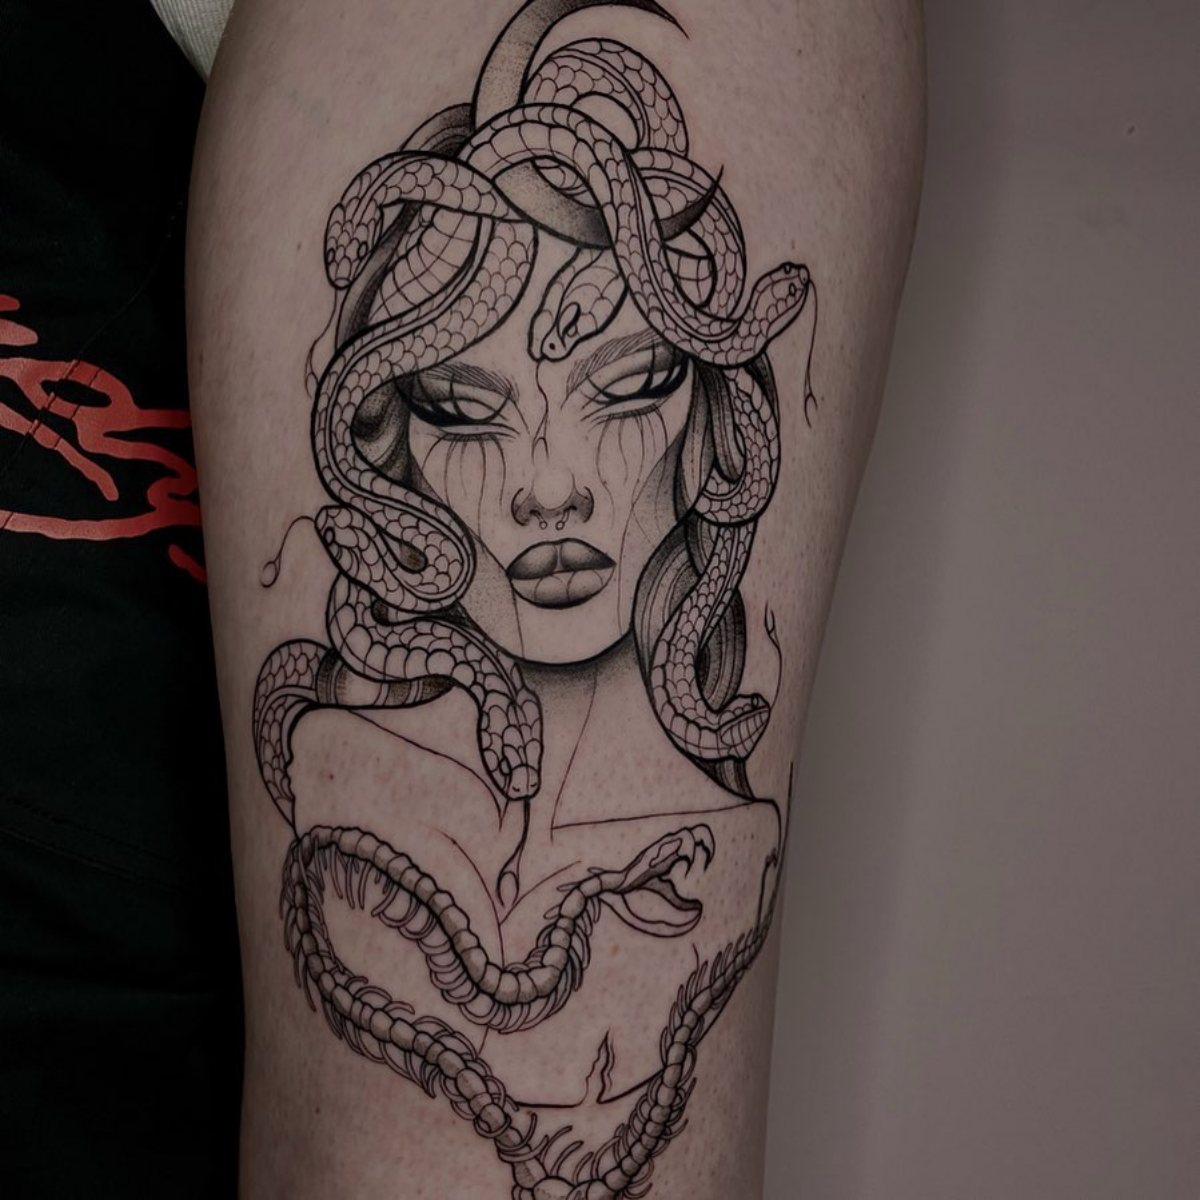 medusa tattoo on arm